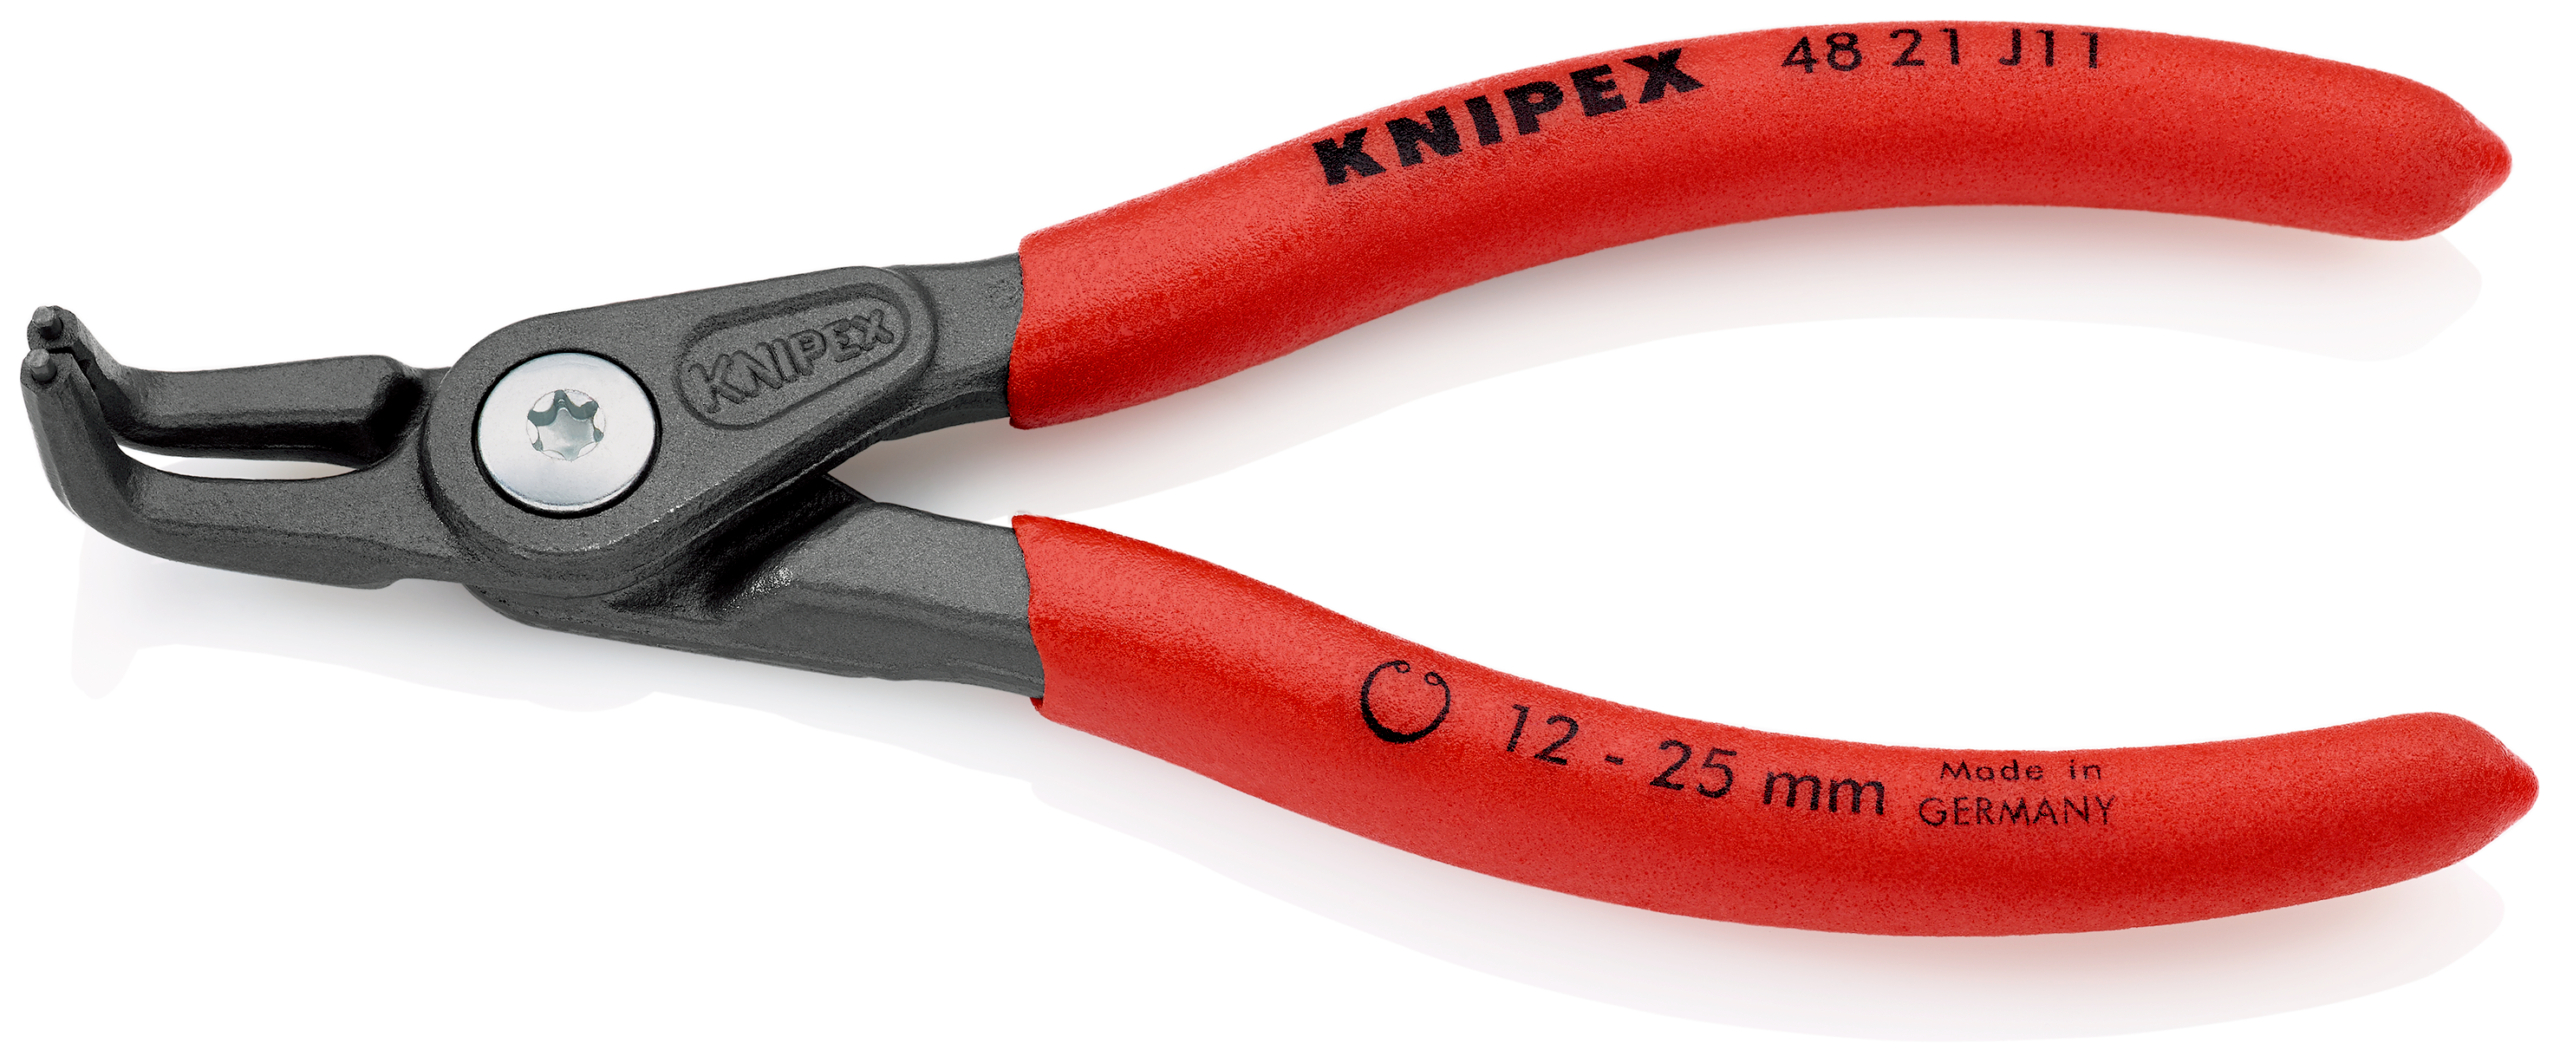 KNIPEX Låsringstänger 4821 Inv - 12 mm - 25 mm